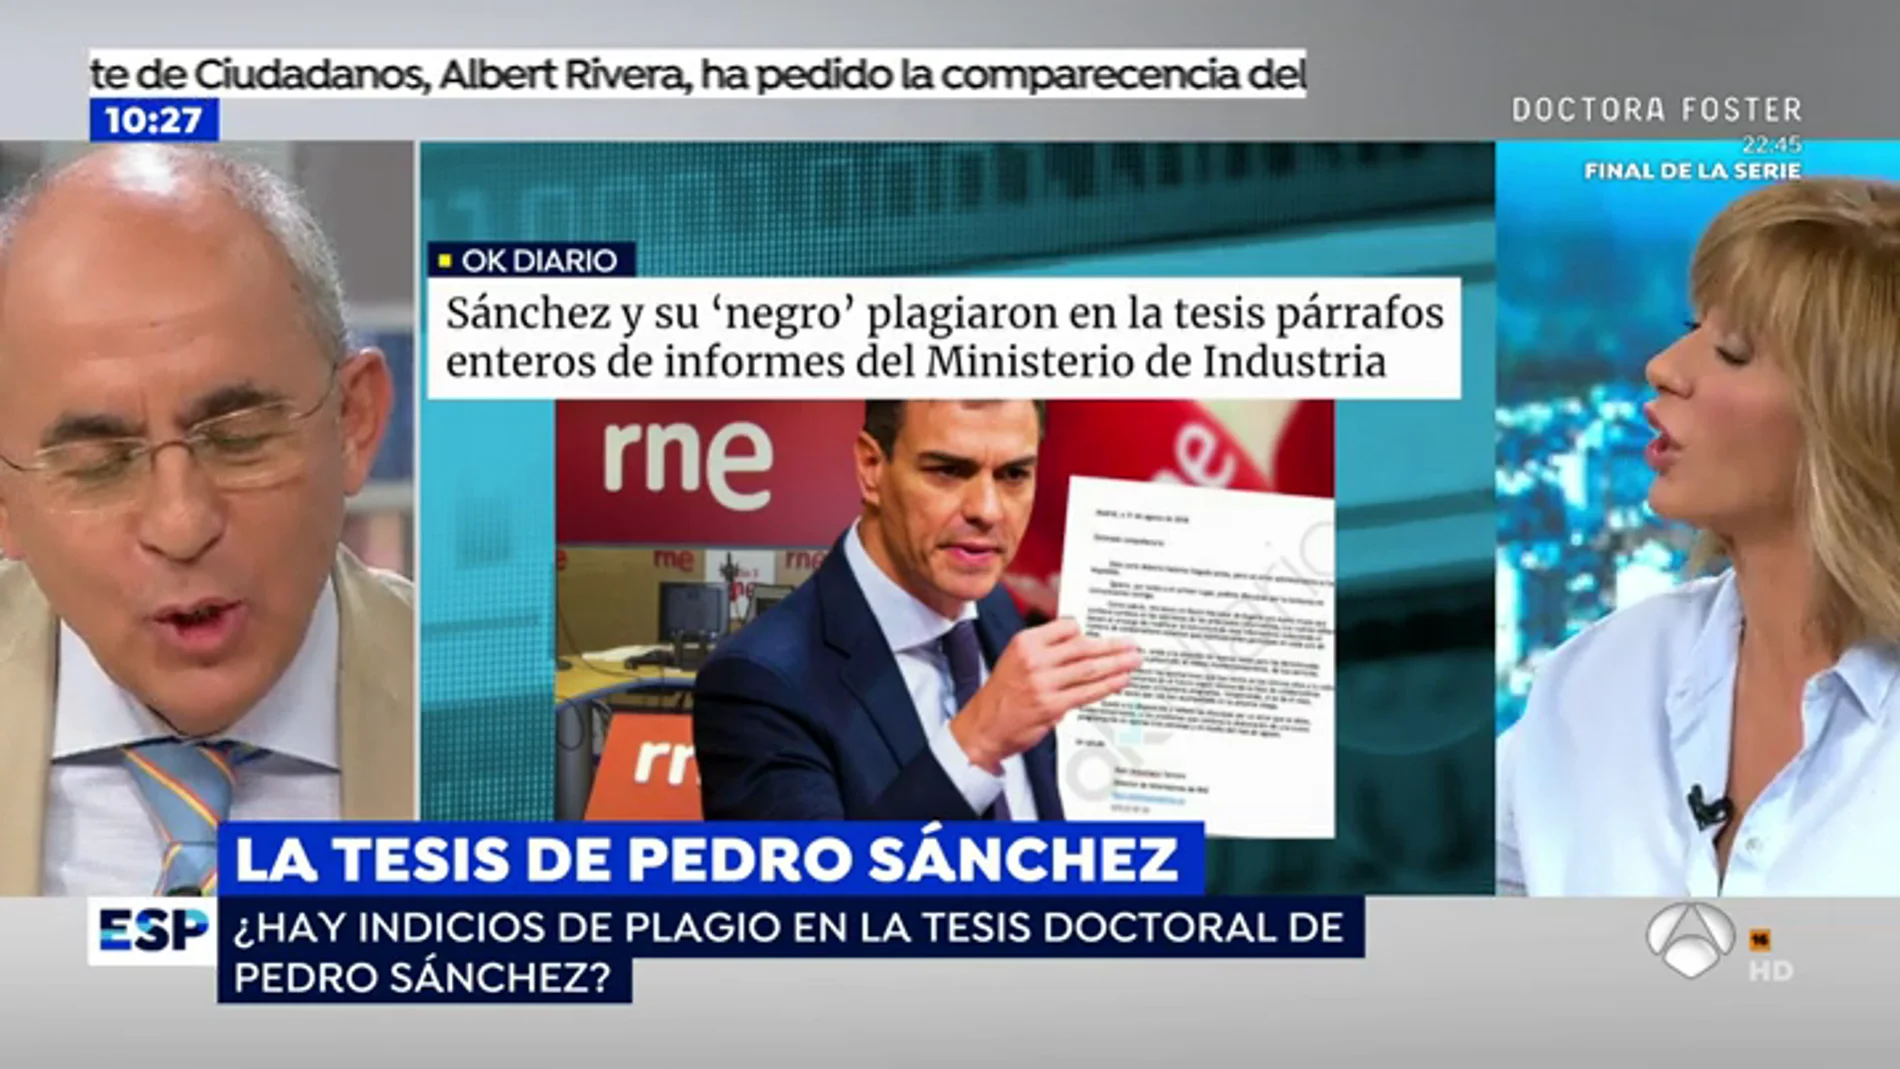 Susanna Griso comunica en directo al director de 'El Mundo' una querella por la noticia sobre el plagio de Pedro Sánchez